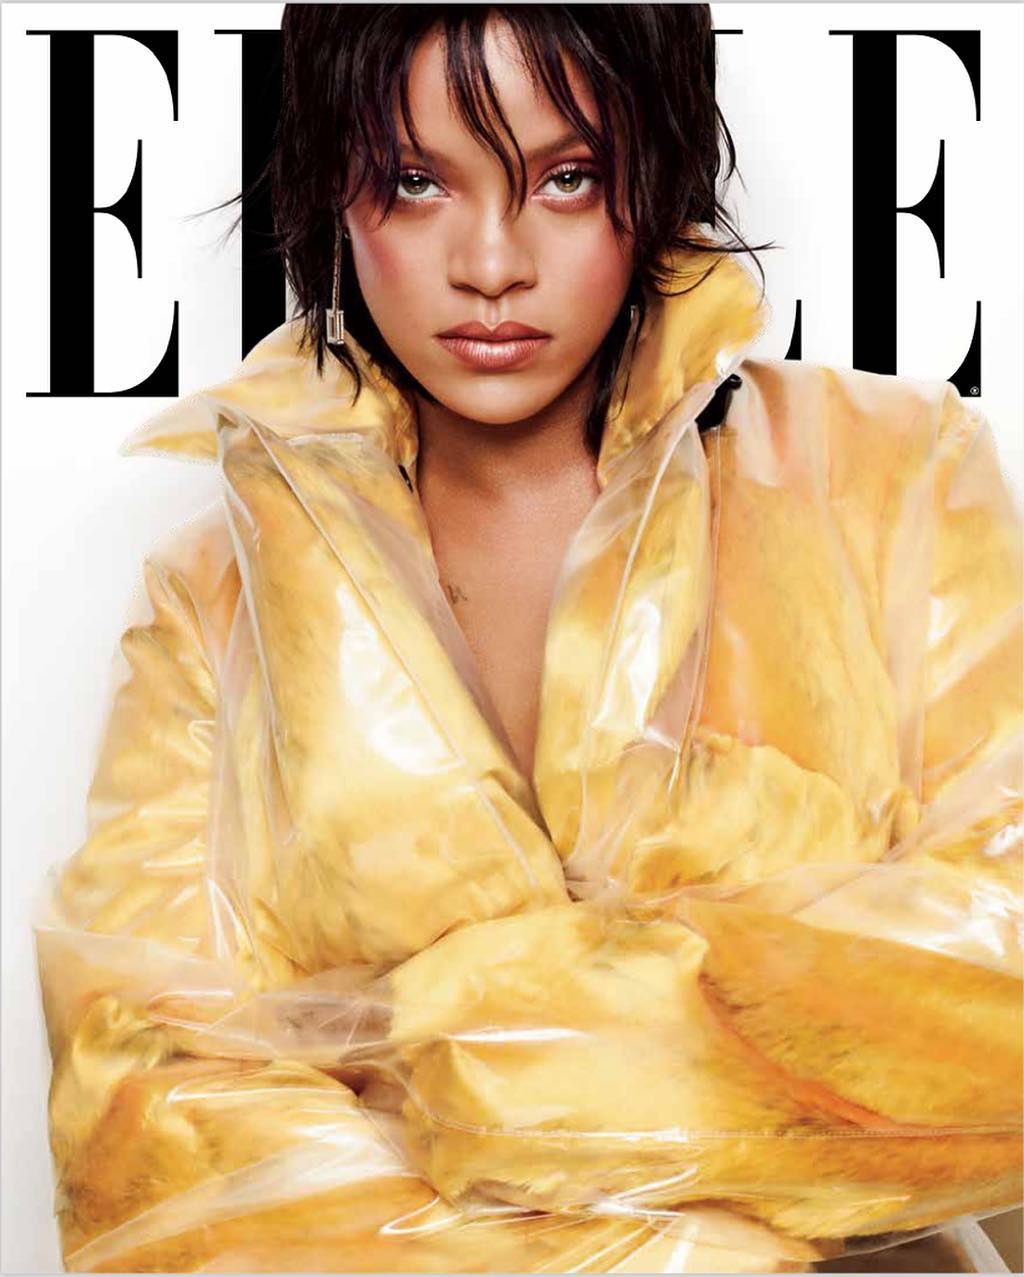 Rihanna đẹp mê hồn trên bìa tạp chí ELLE tháng 10